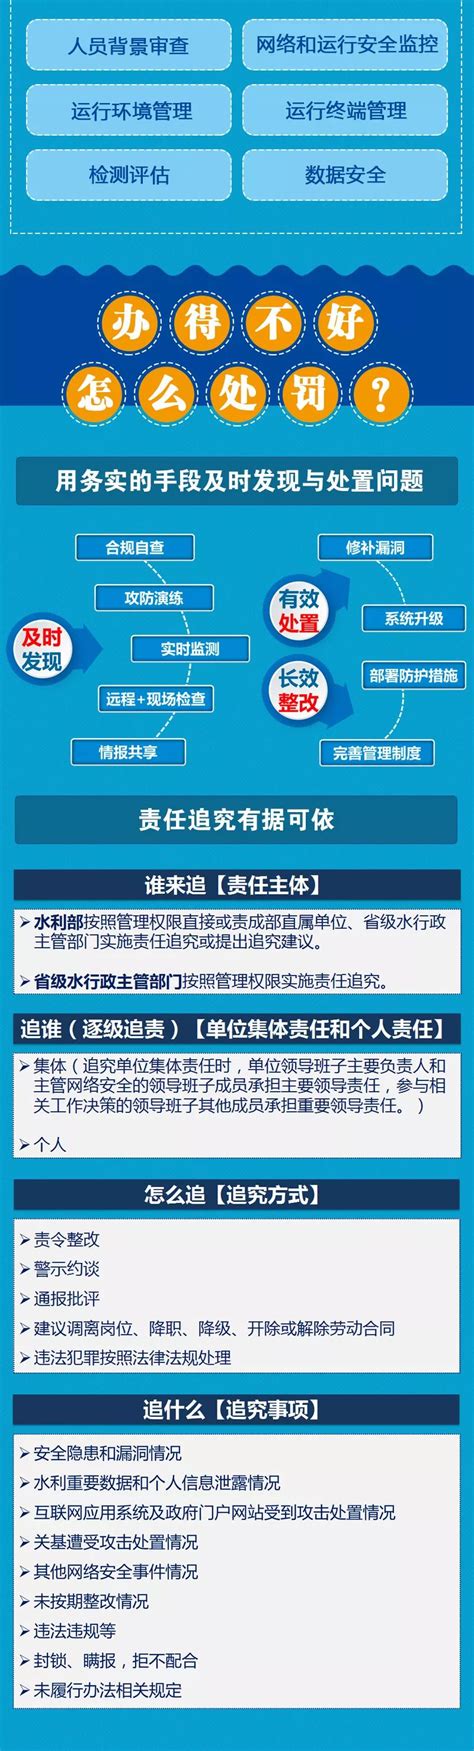 广东省水利厅 - 图文解读 | 水利网络安全管理办法